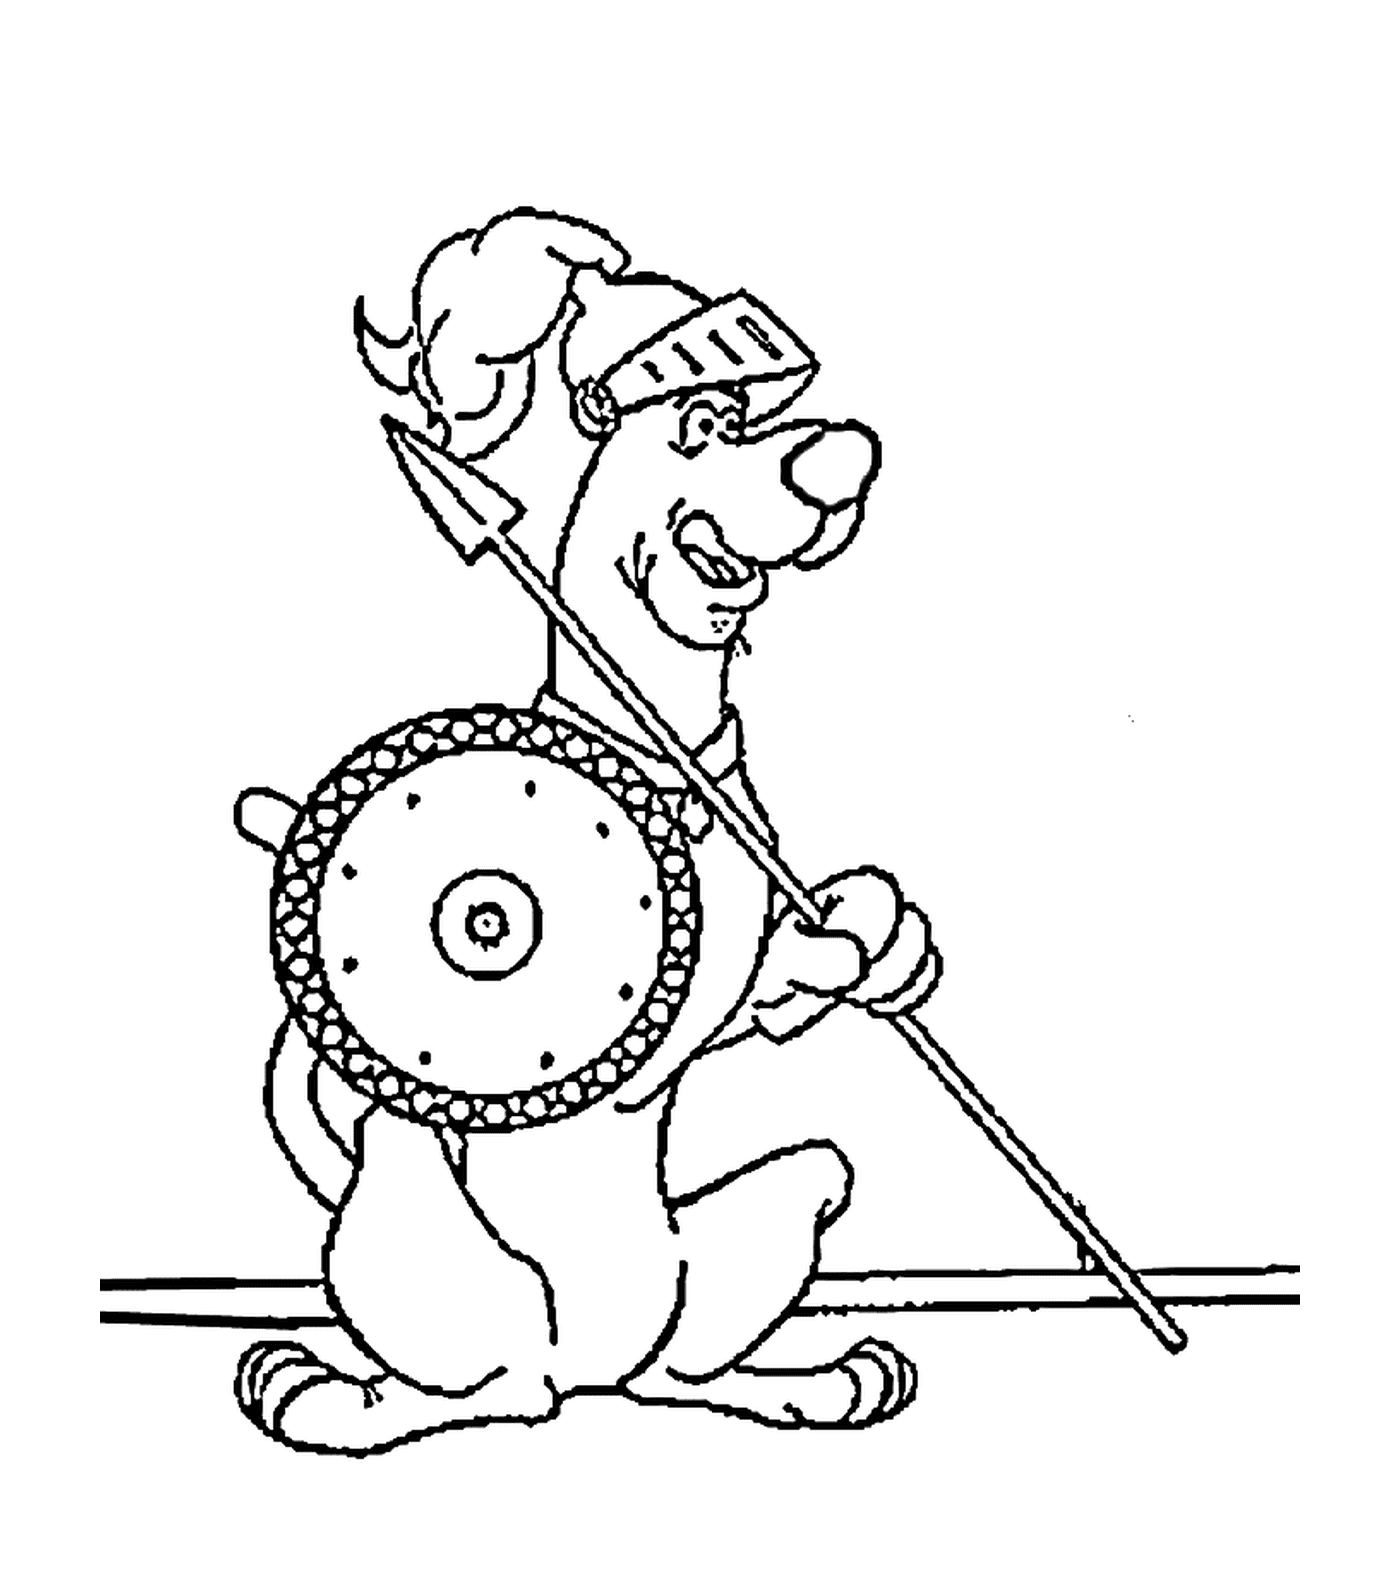  Un perro sostiene una lanza y un escudo 